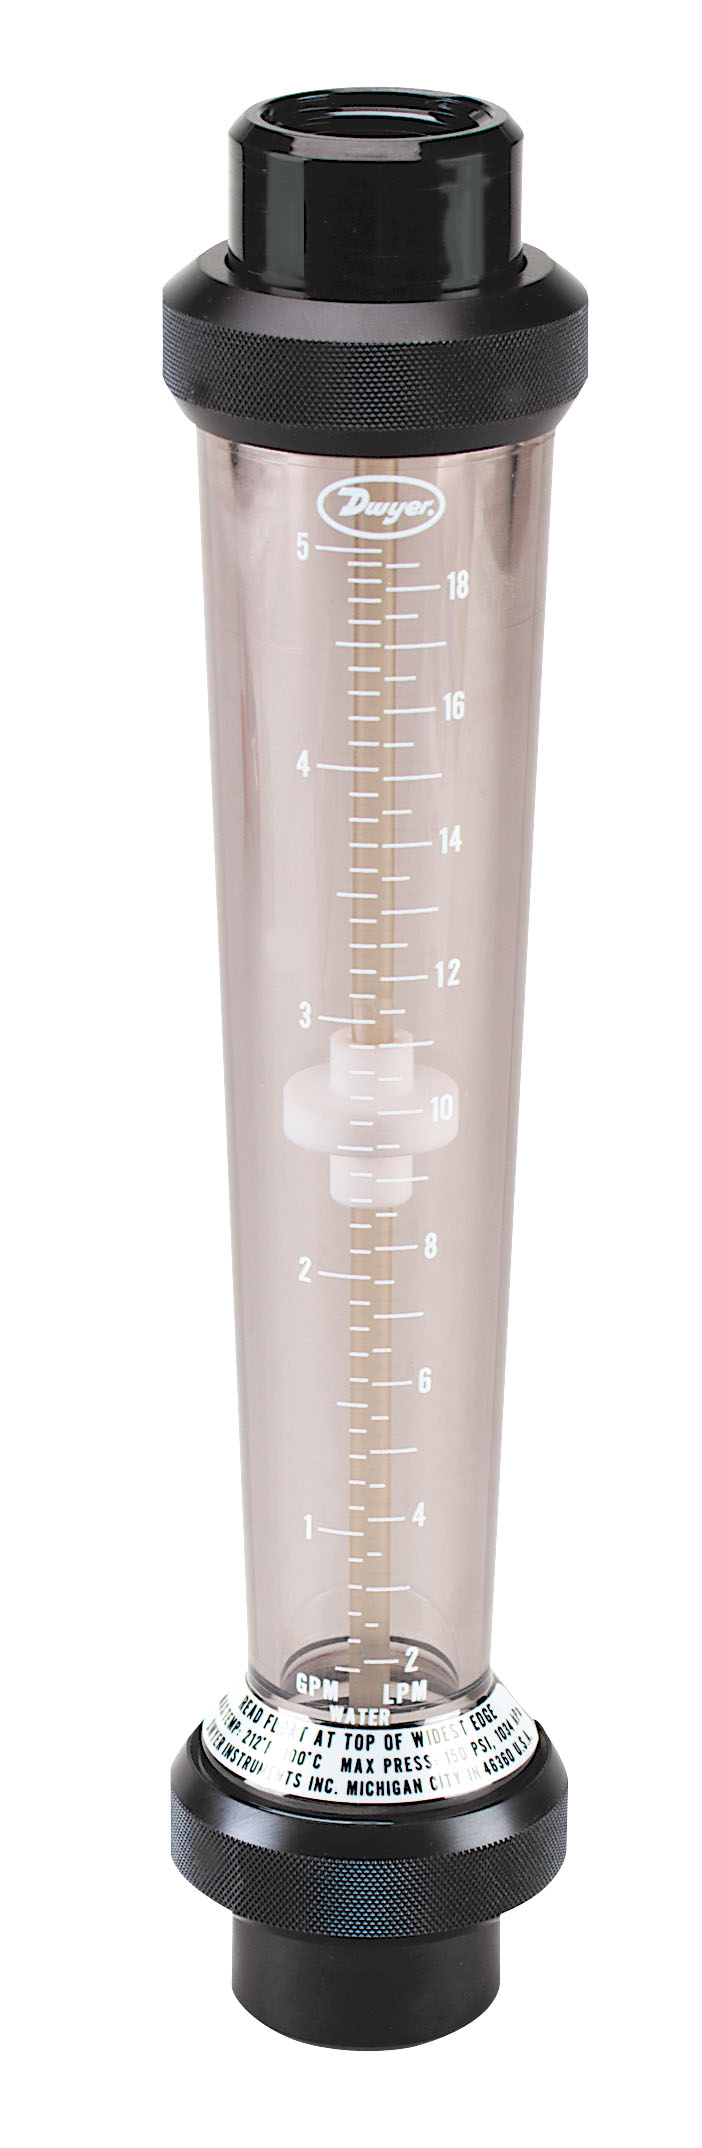 Высокотемпературный ротаметр для жидкости DWYER UV ULTRA-VIEW